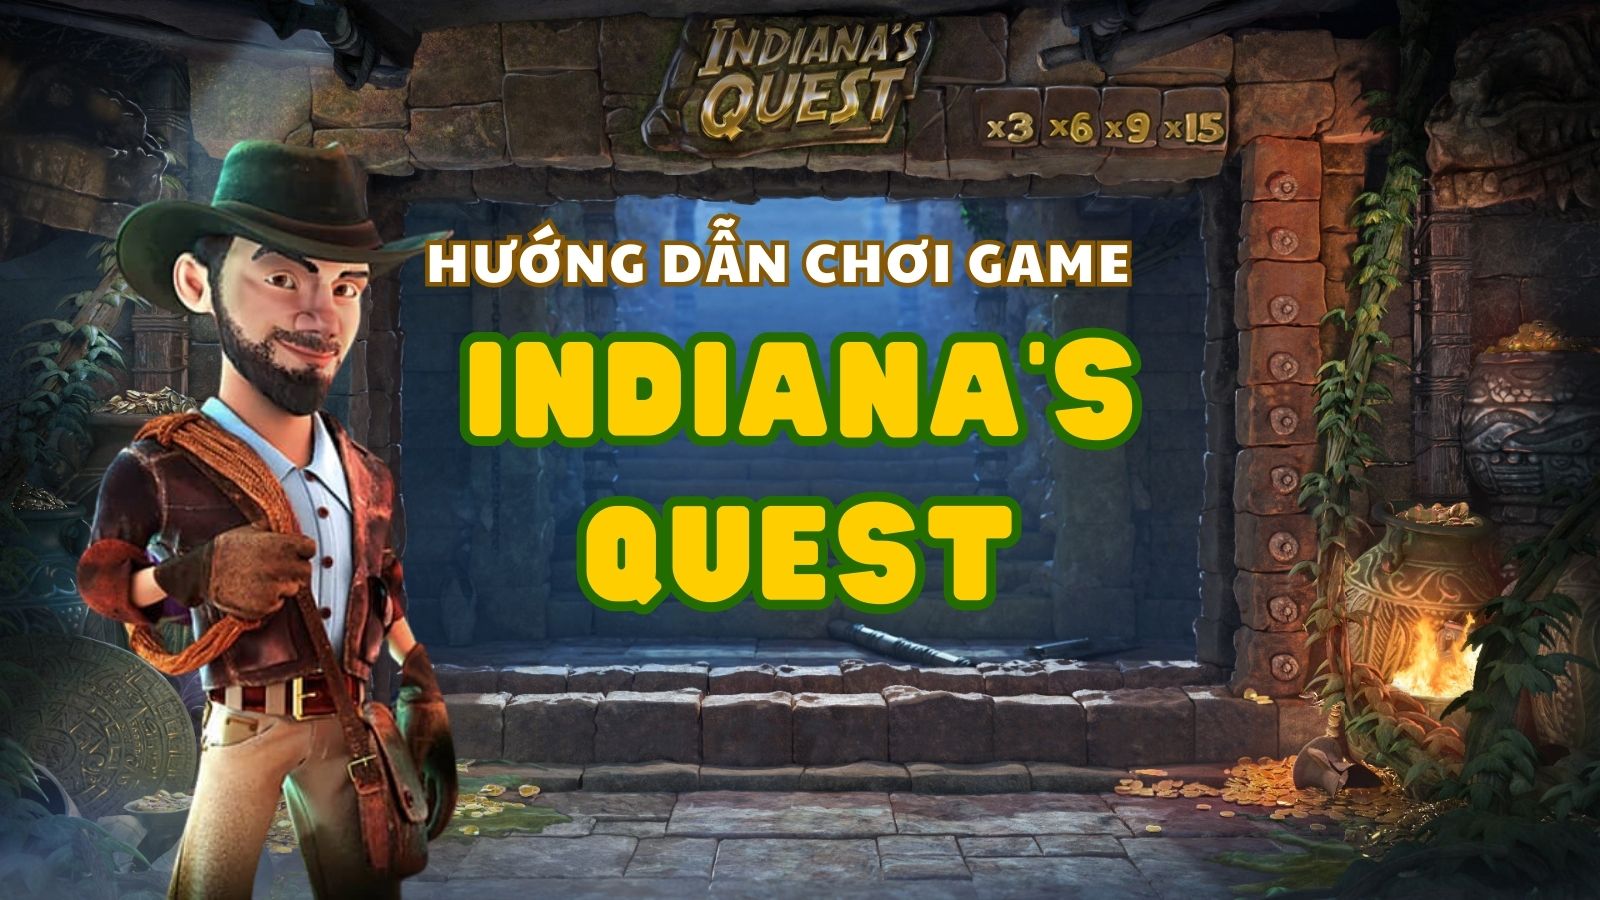 Hướng dẫn chơi game slot Indiana’s Quest tại nhà cái Fabet